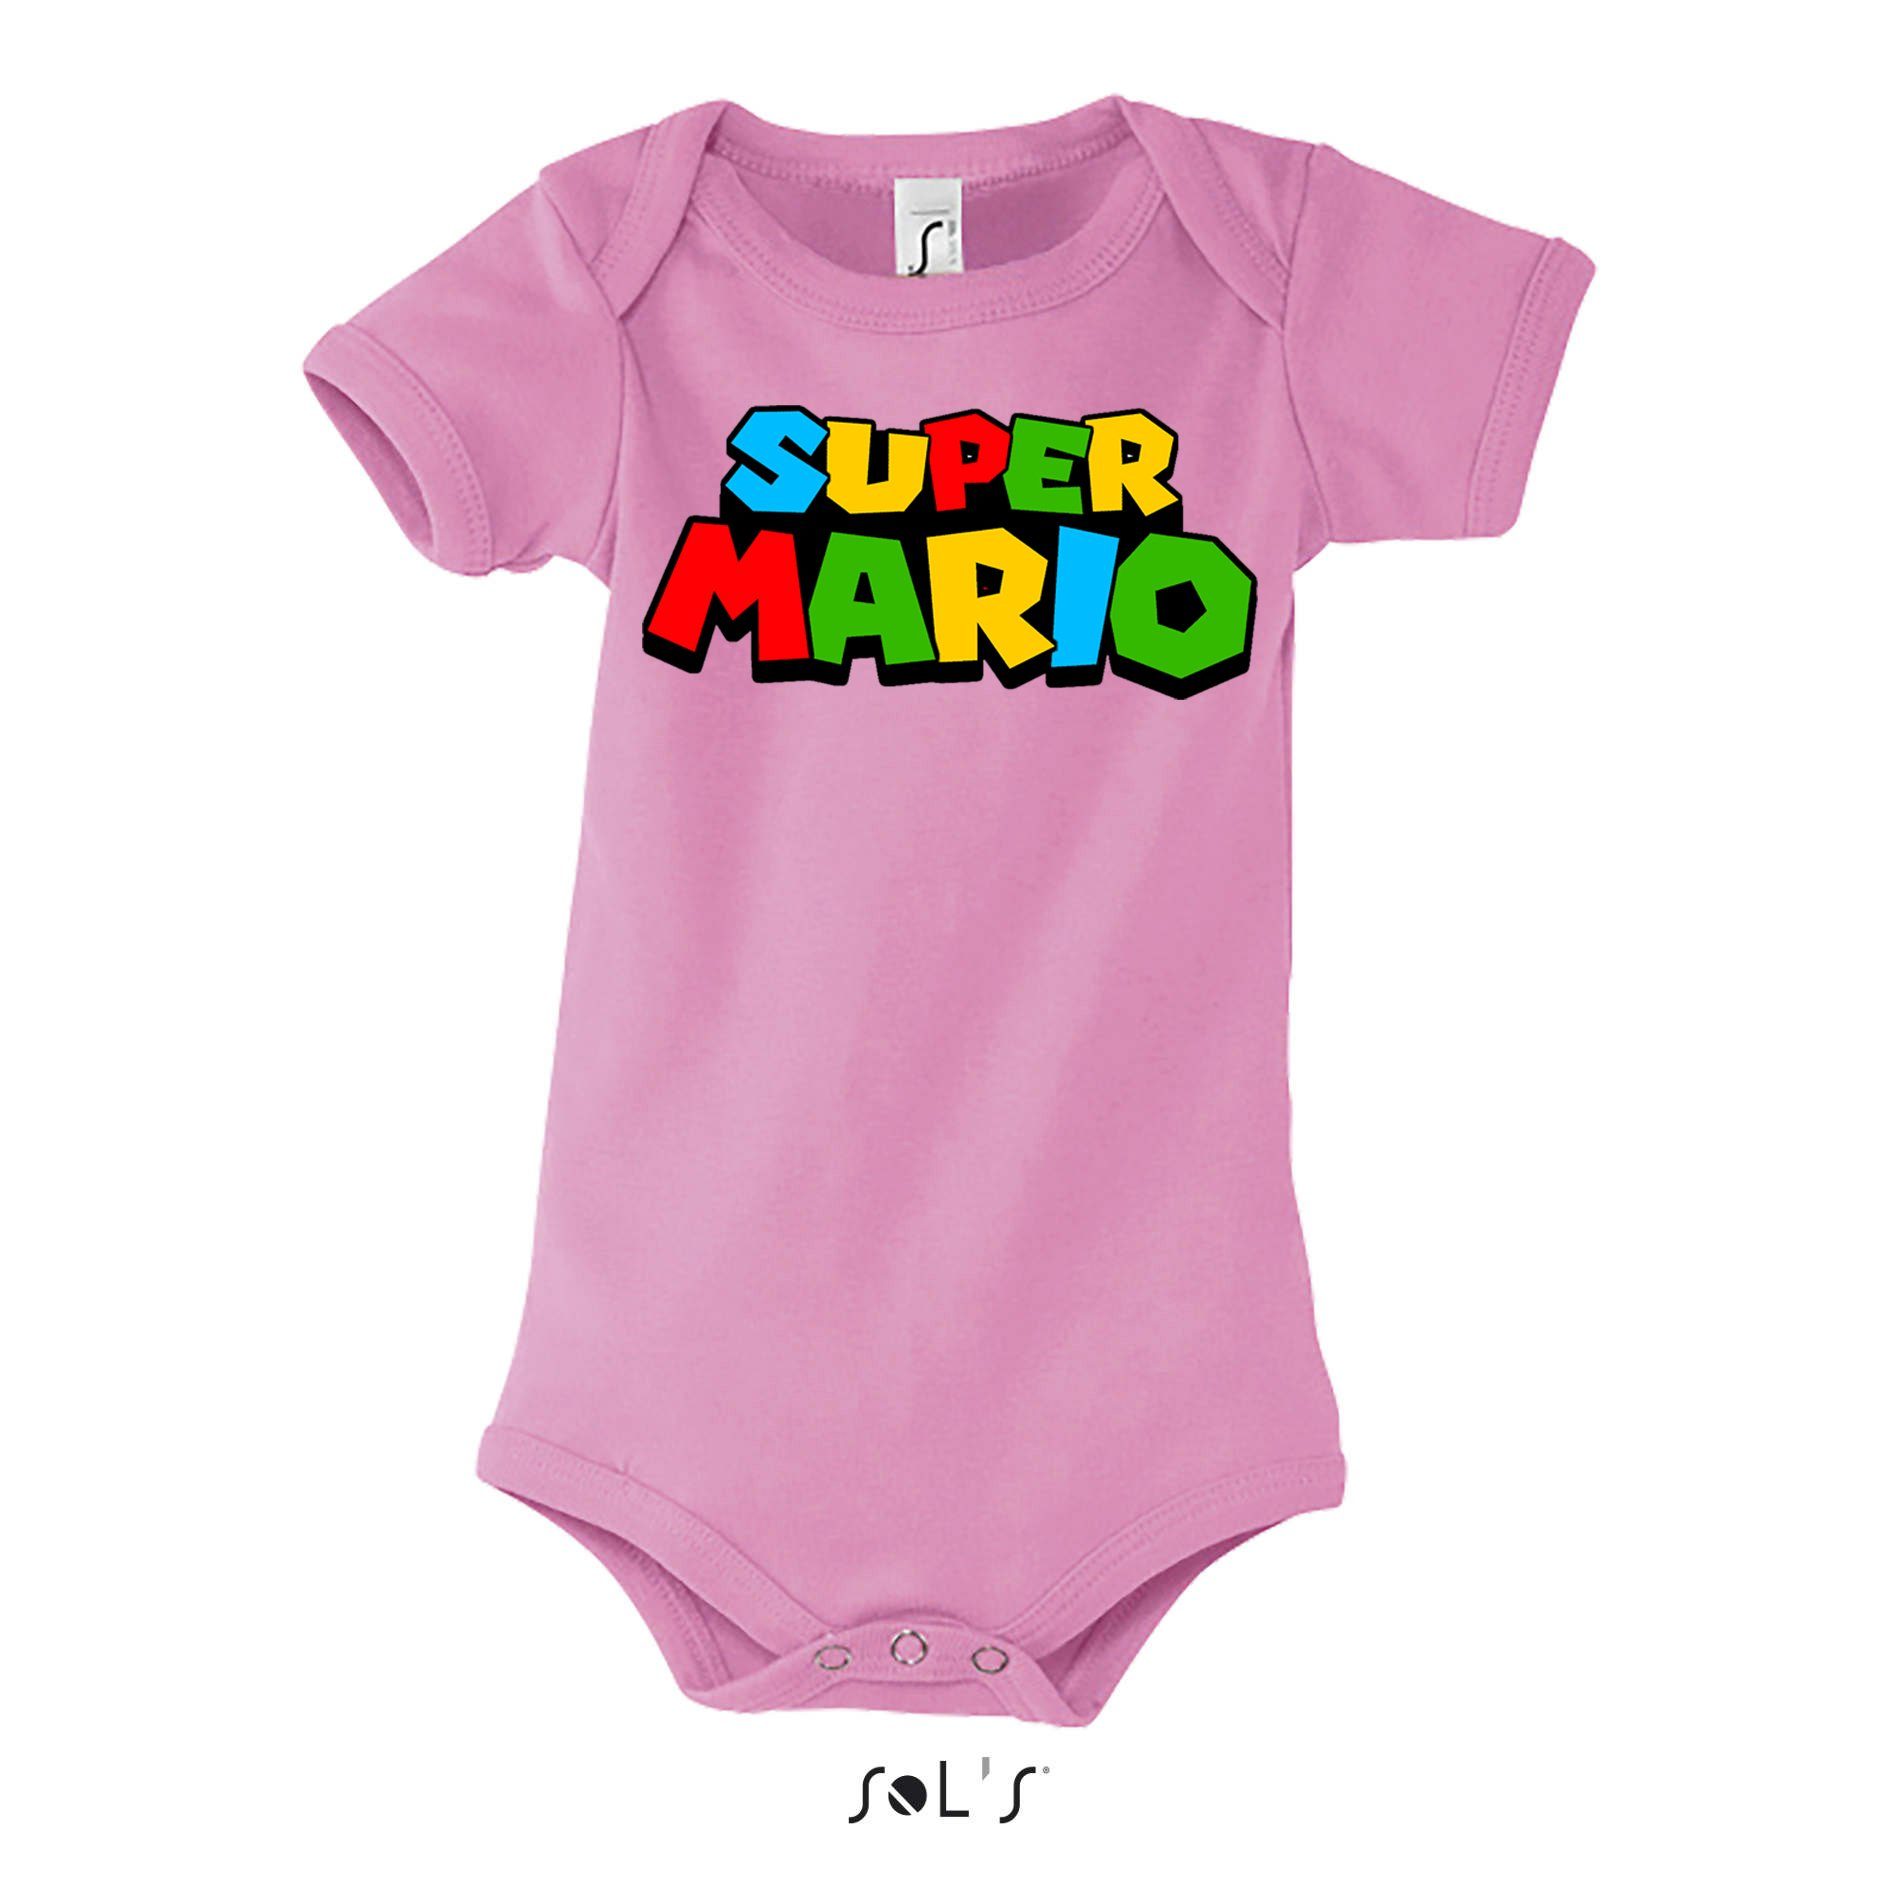 Blondie & Brownie Strampler Kinder Baby Super Mario Nintendo Gamer Gaming Konsole Spiele Rosa